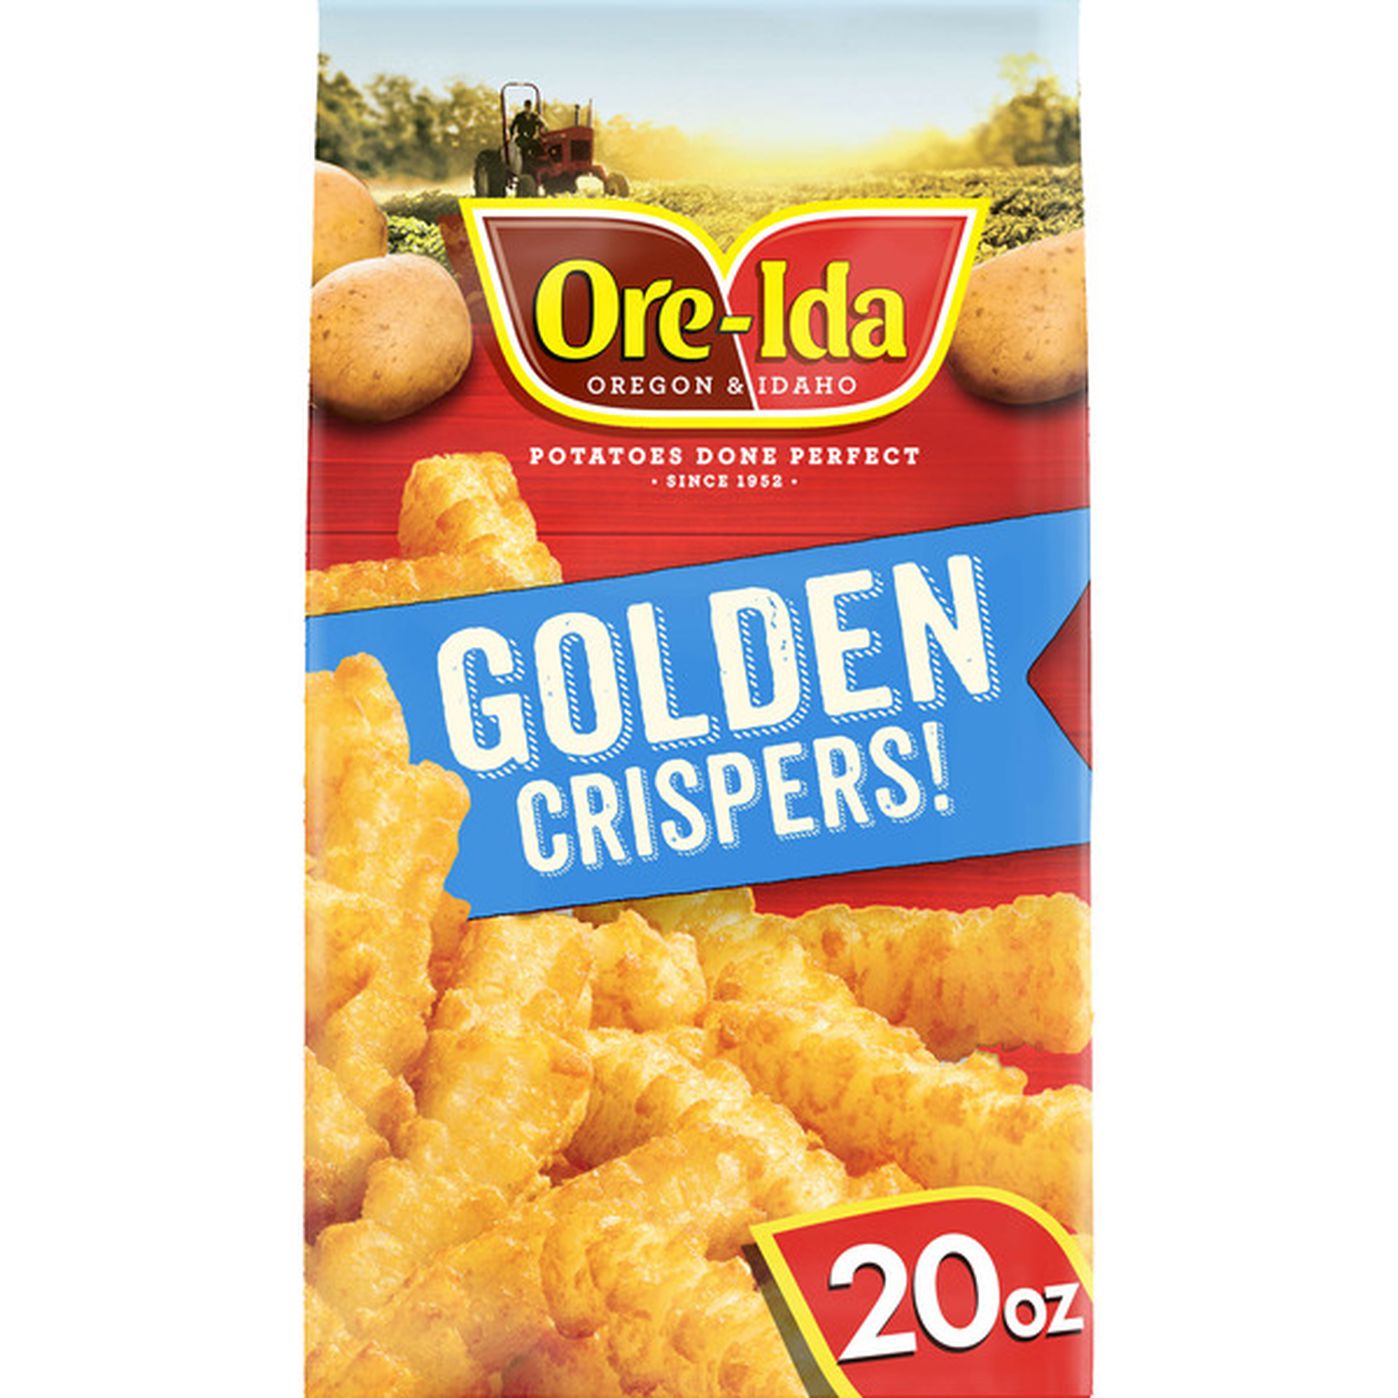 Ore Ida Golden Crispers Crispy French Fry Fried Food Snacks Frozen